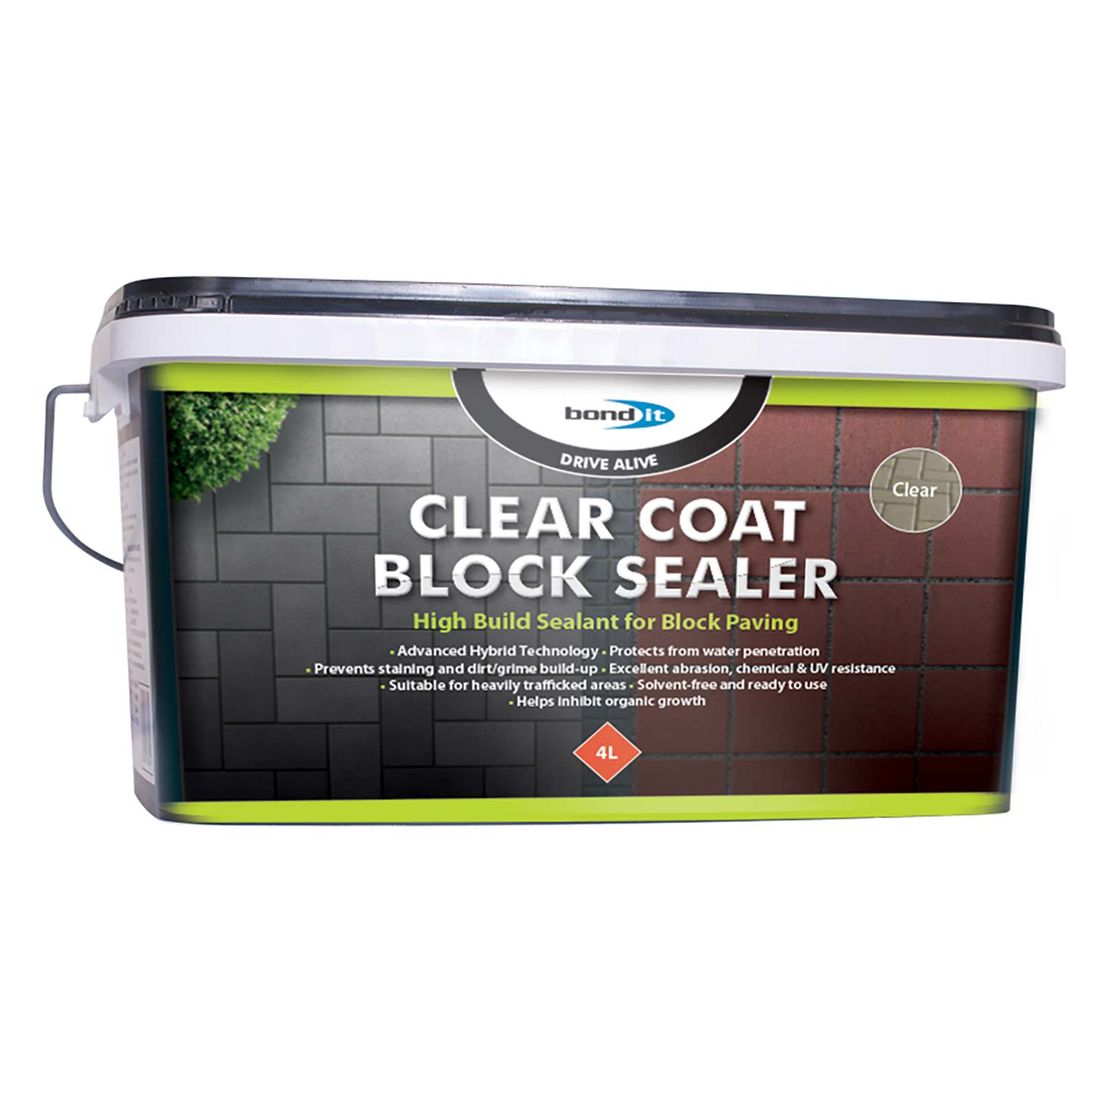 Drivealive Block Sealer Clear Coat 4L